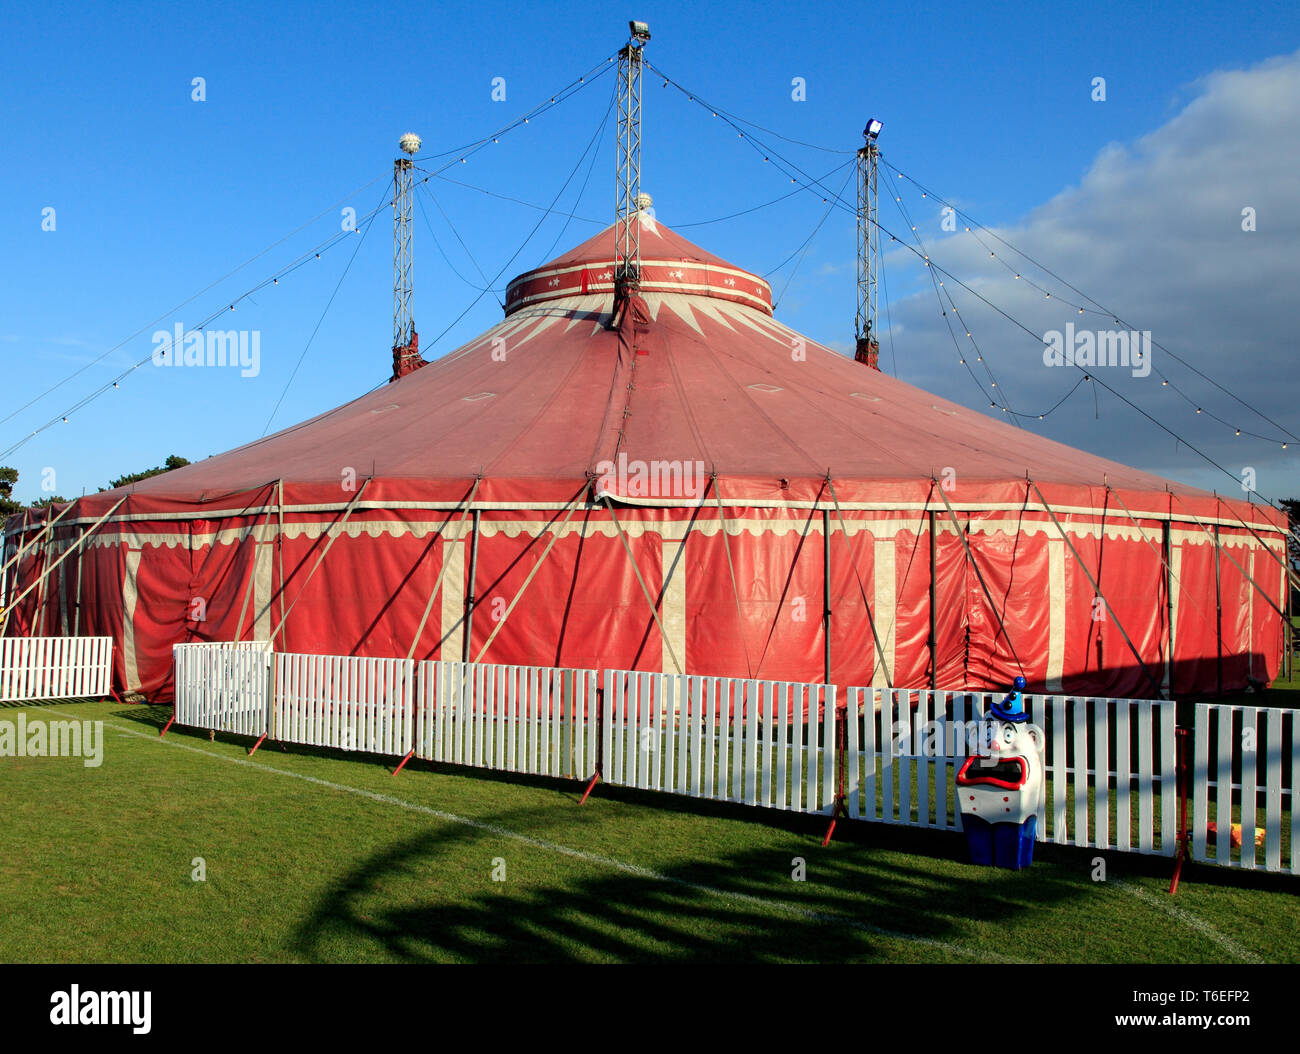 Russells Internationale Zirkus, Reisen, Transportmittel, Big Top Zelt, Hunstanton, Norfolk, Großbritannien. Stockfoto